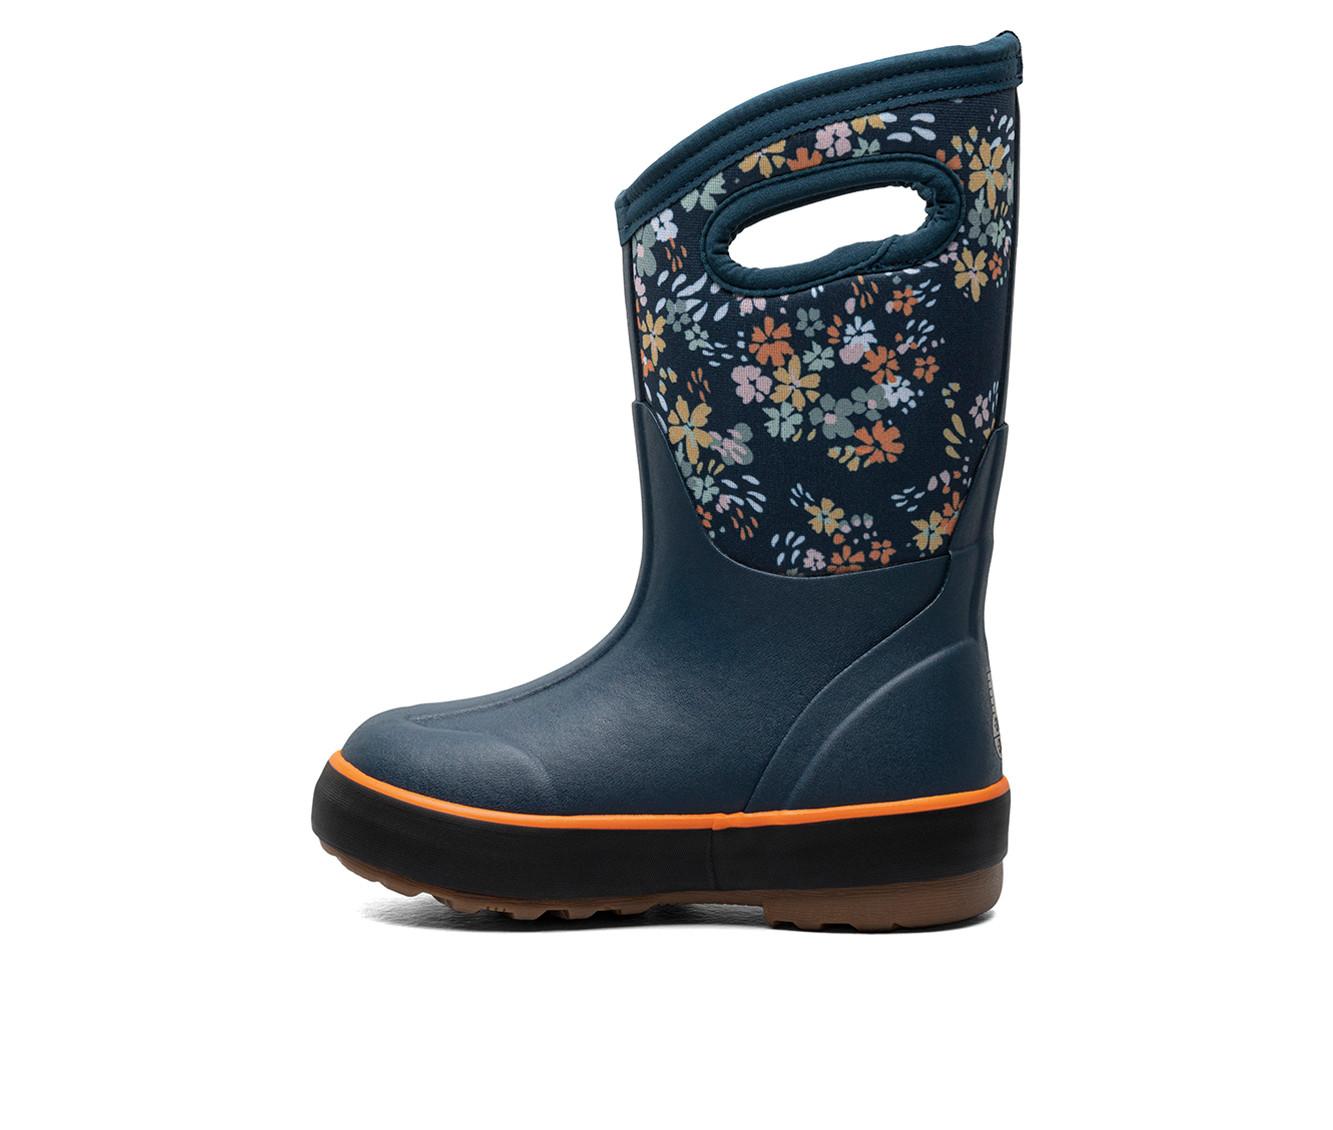 Girls' Bogs Footwear Little & Big Kid Classic II Water Garden Winter Boots